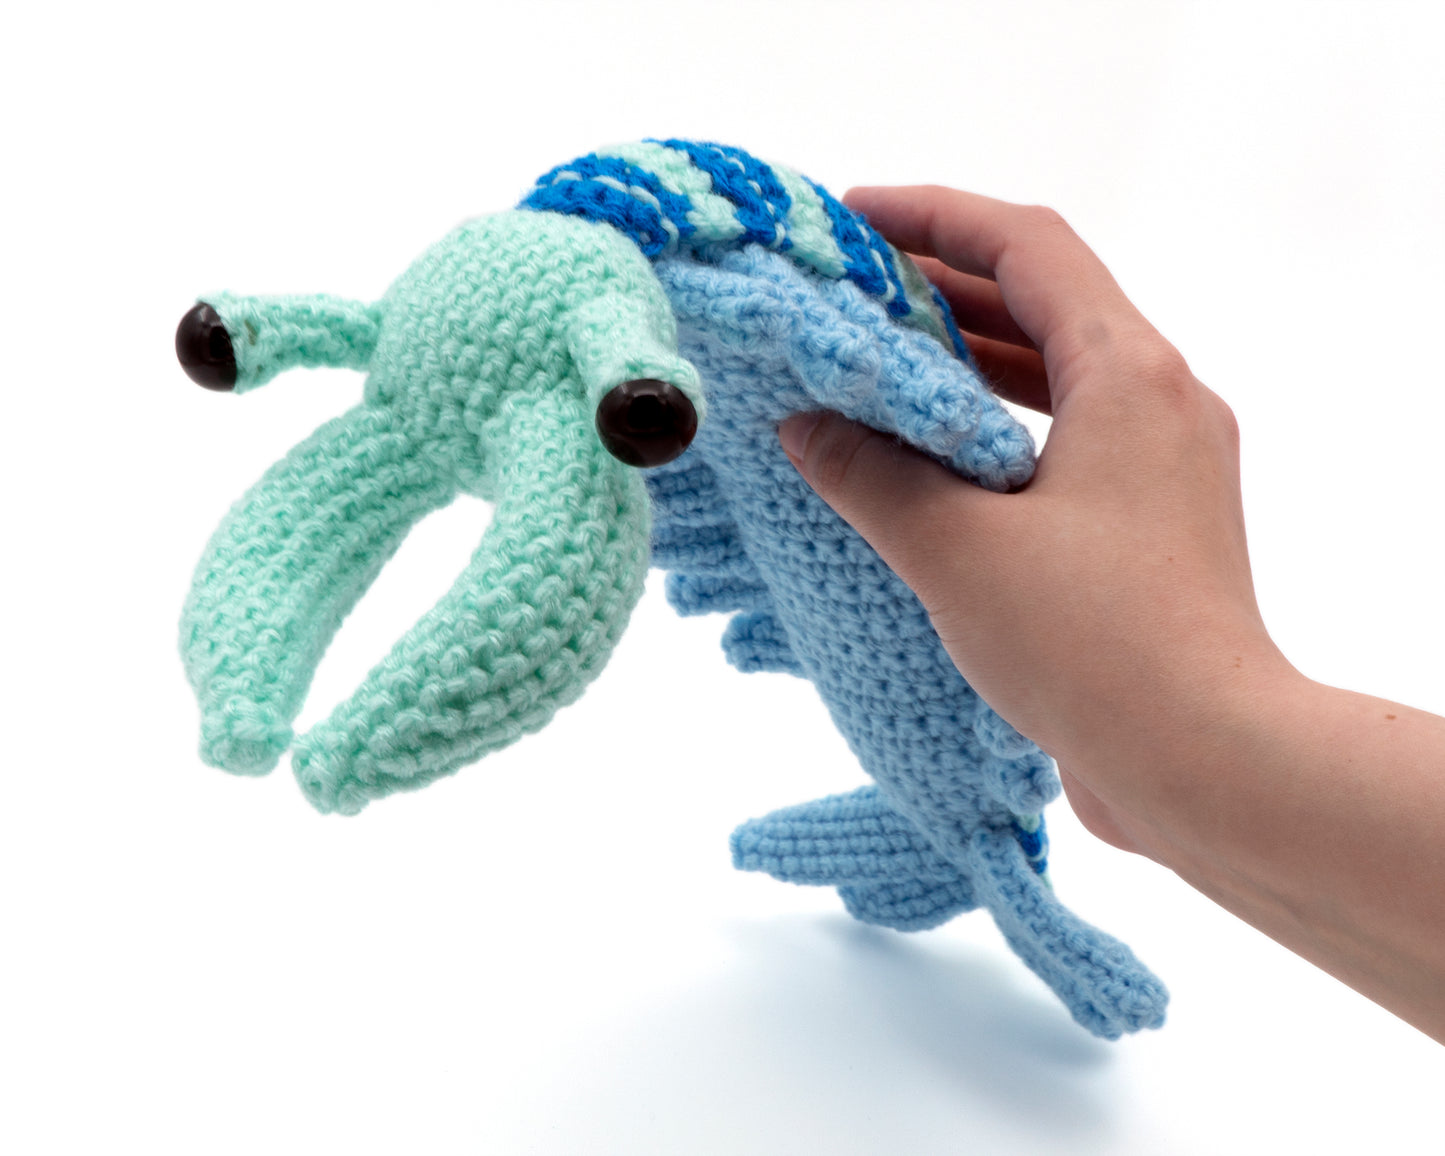 amigurumi crochet anomalocaris pattern in hand for size comparison